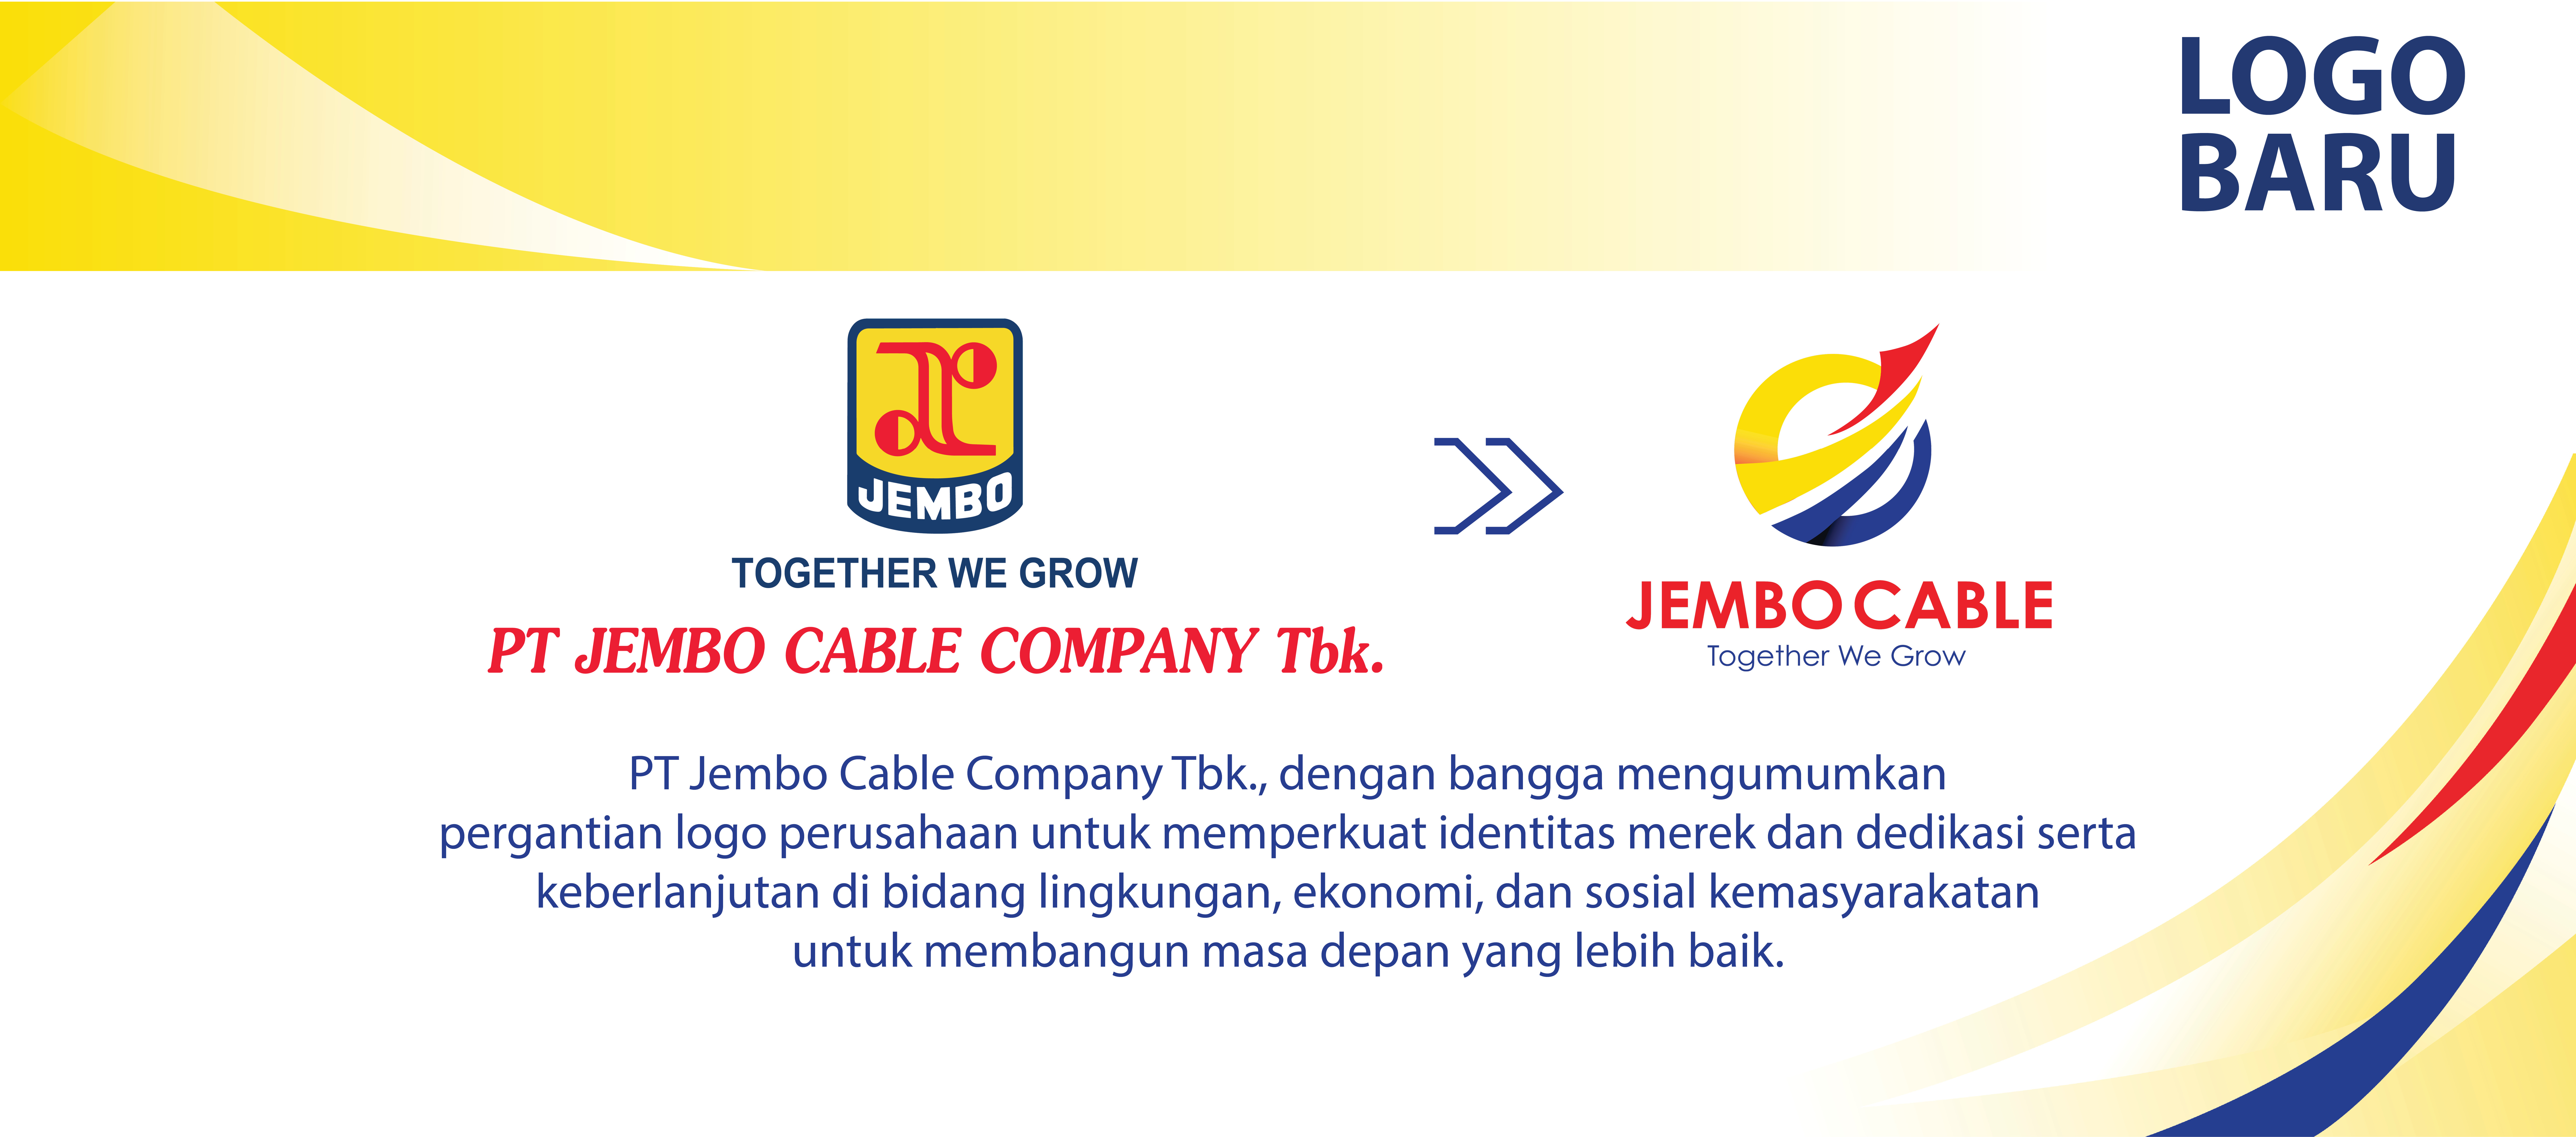 PT Jembo Cable Company Tbk. Mengumumkan Pergantian Logo Sebagai Bentuk Dedikasi dan Keberlanjutan Demi Membangun masa Depan yang Lebih Baik